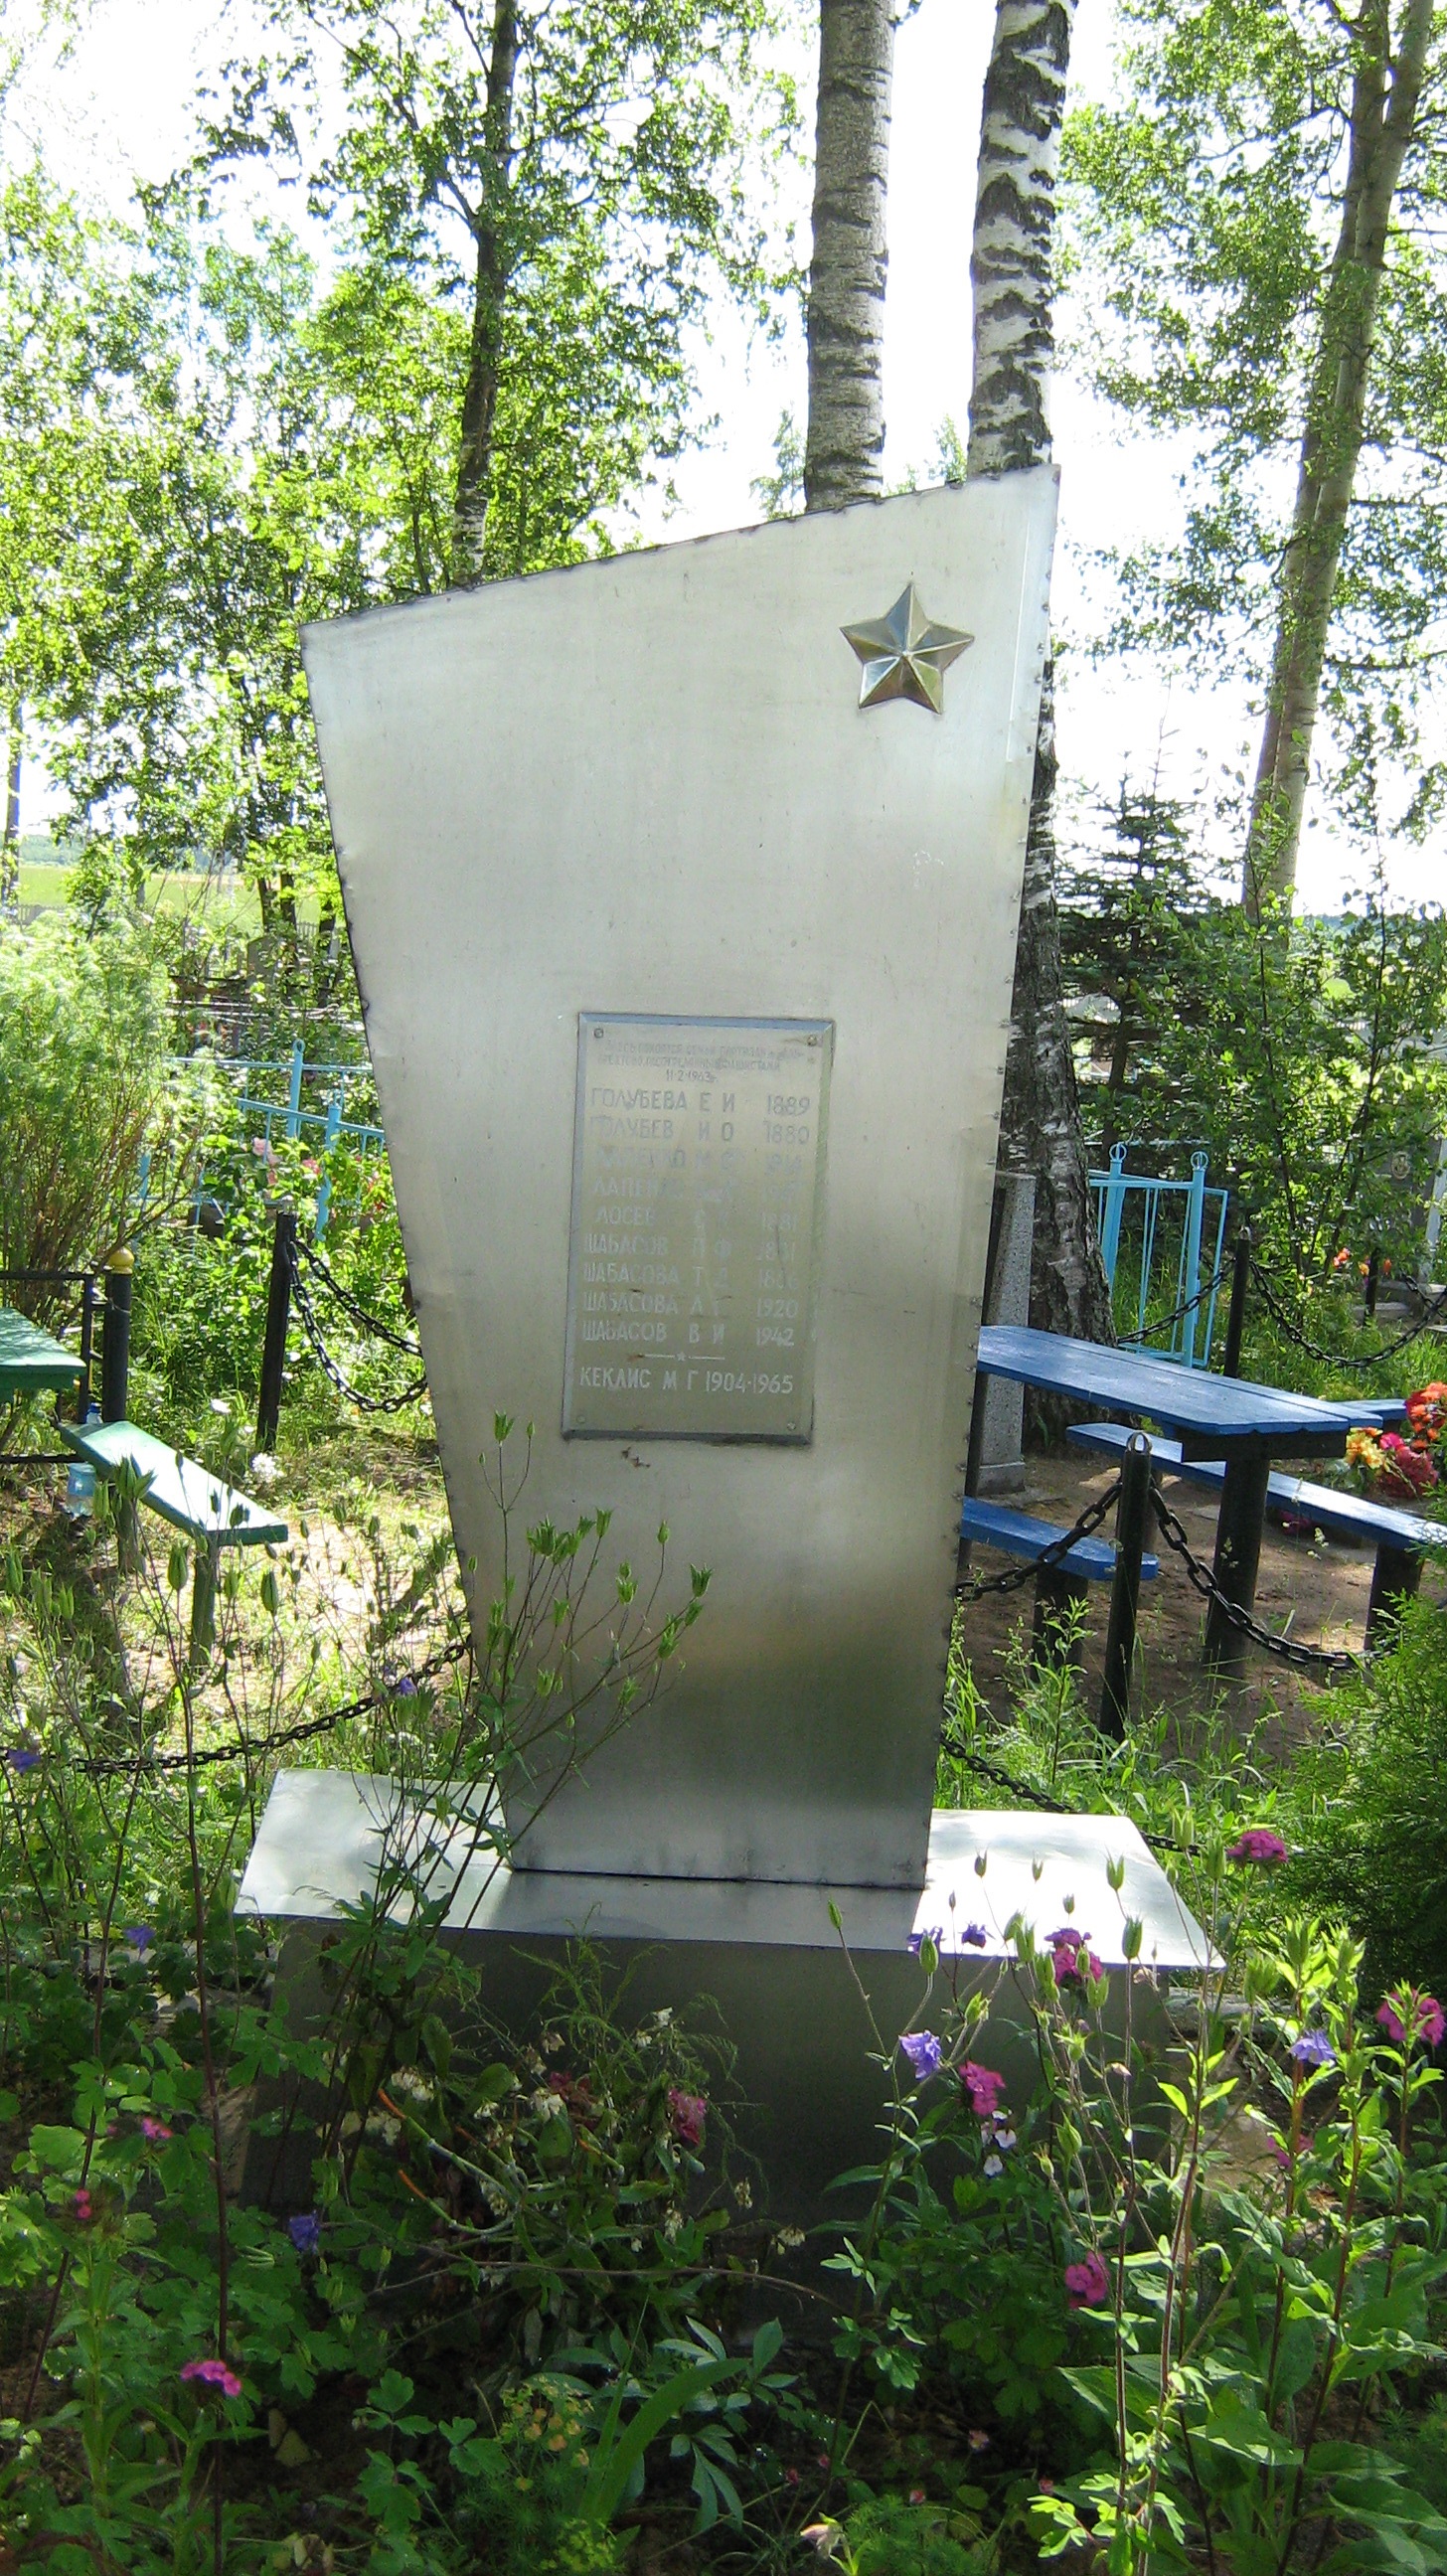 Братская могила №5772, расположенная в в 1.1 км северо-западнее д. Альбрехтово, Россонский район, Витебская область